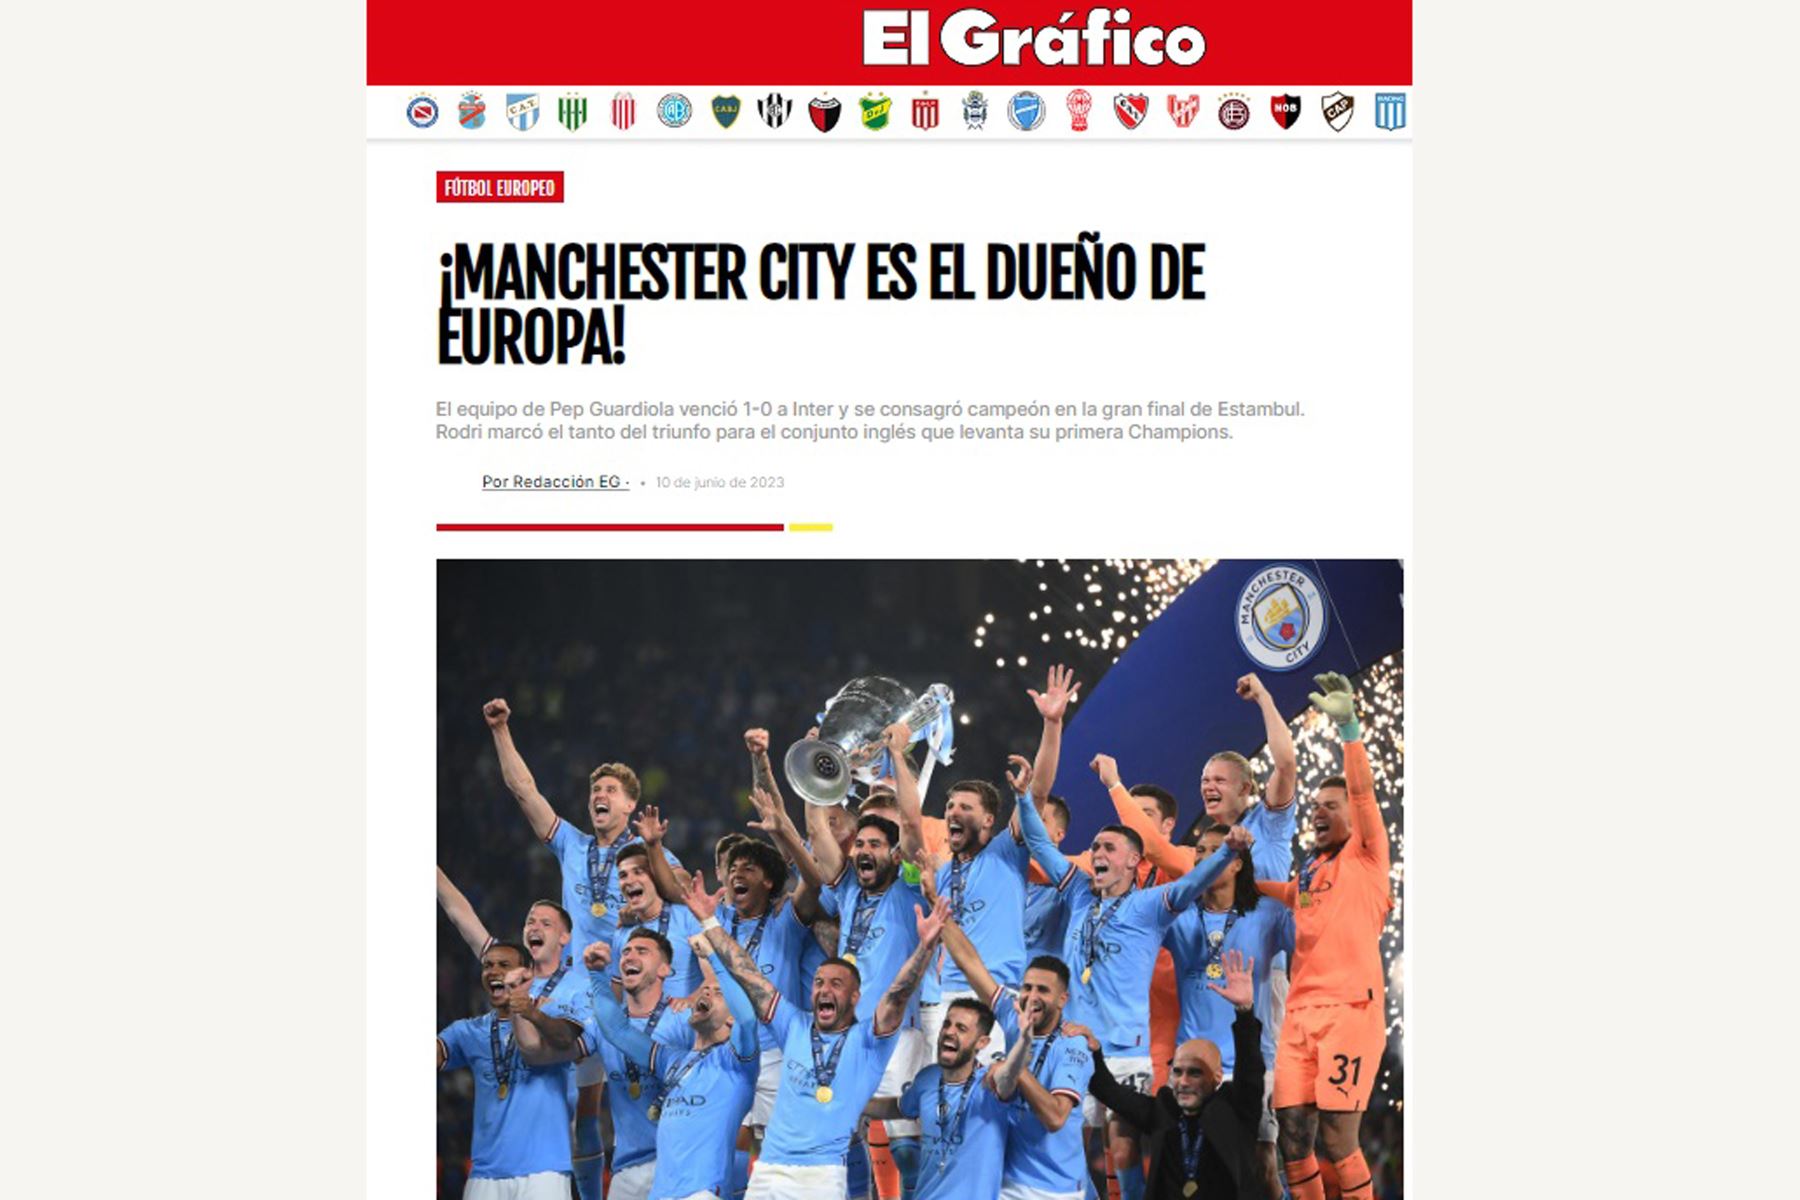 Así informan los medios internacionales el triunfo de Manchester City. En la imagen, portada de la revista El Gráfico.
Foto: Internet / Medios